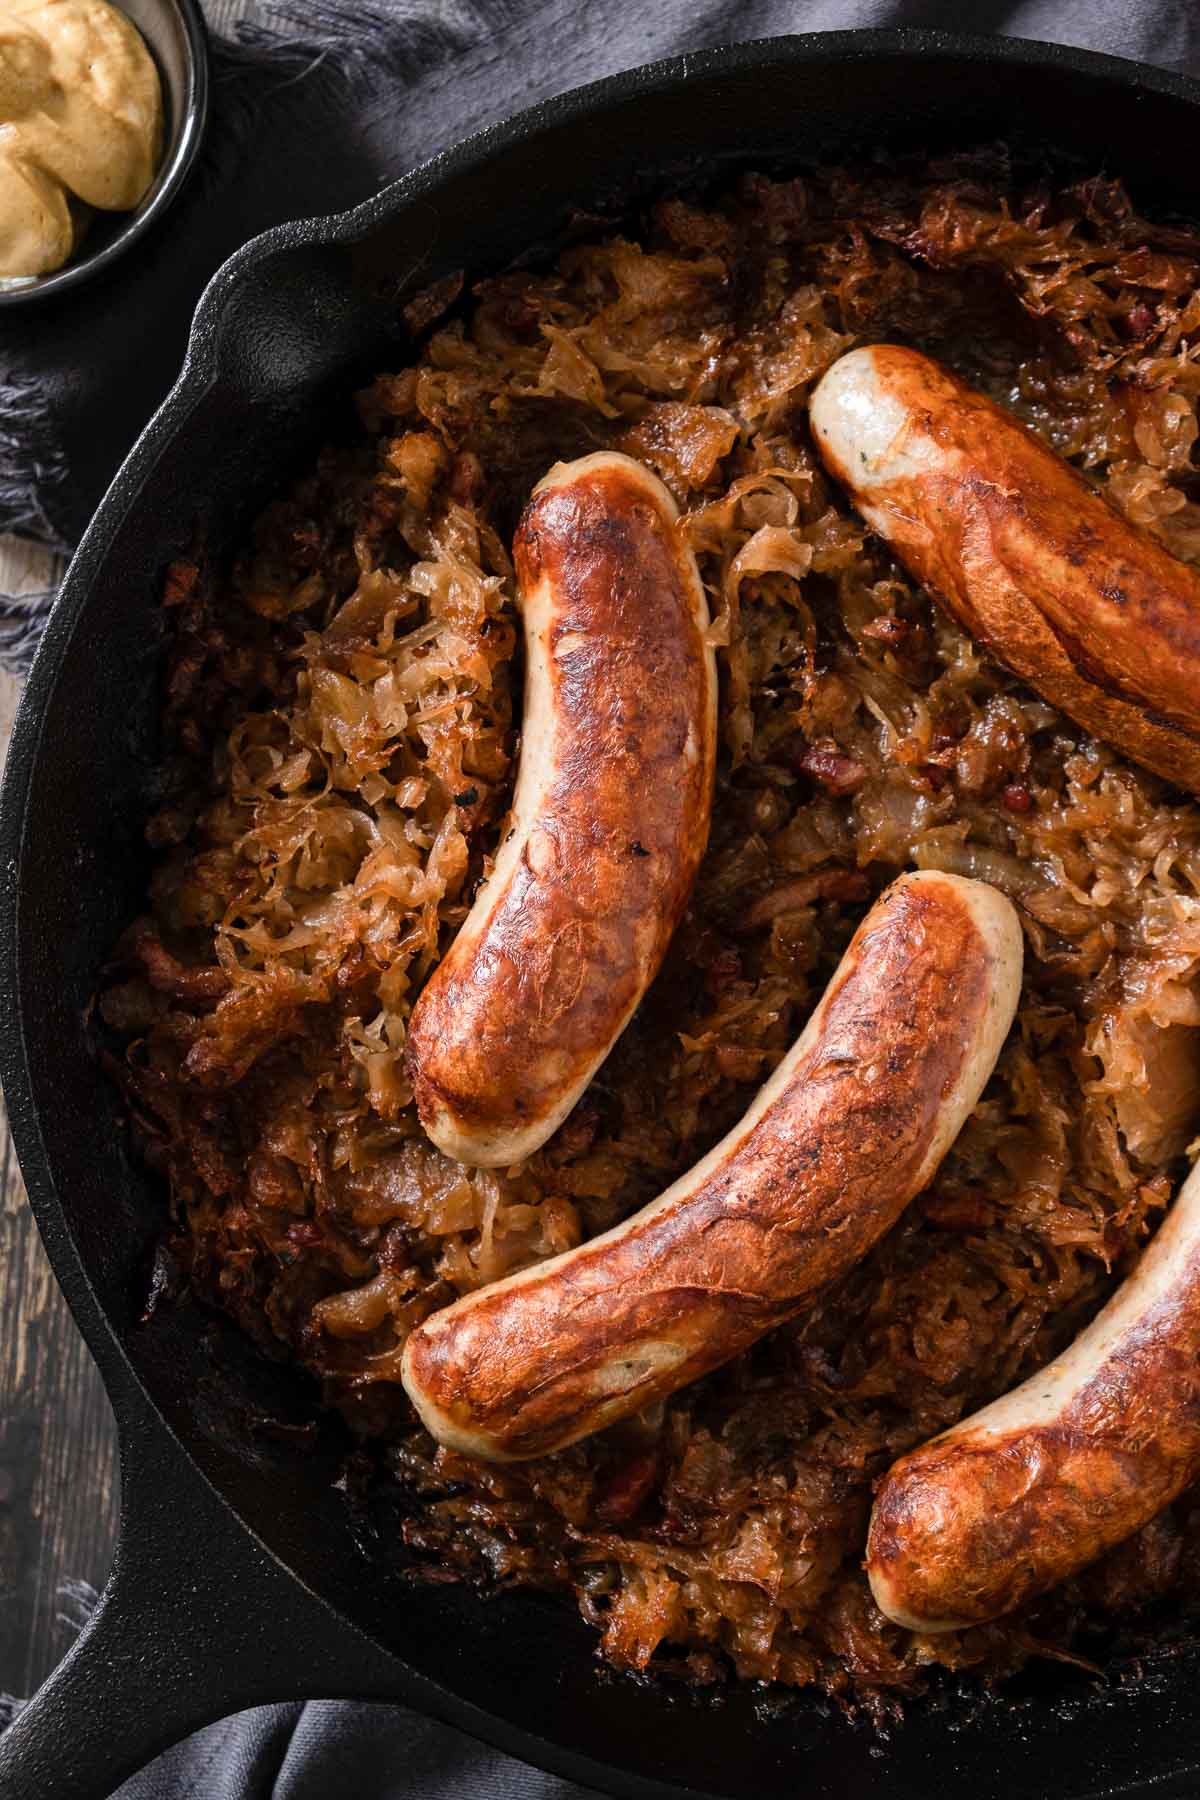 Golden brown bratwurst sausages nestled in braised sauerkraut in a cast iron skillet.